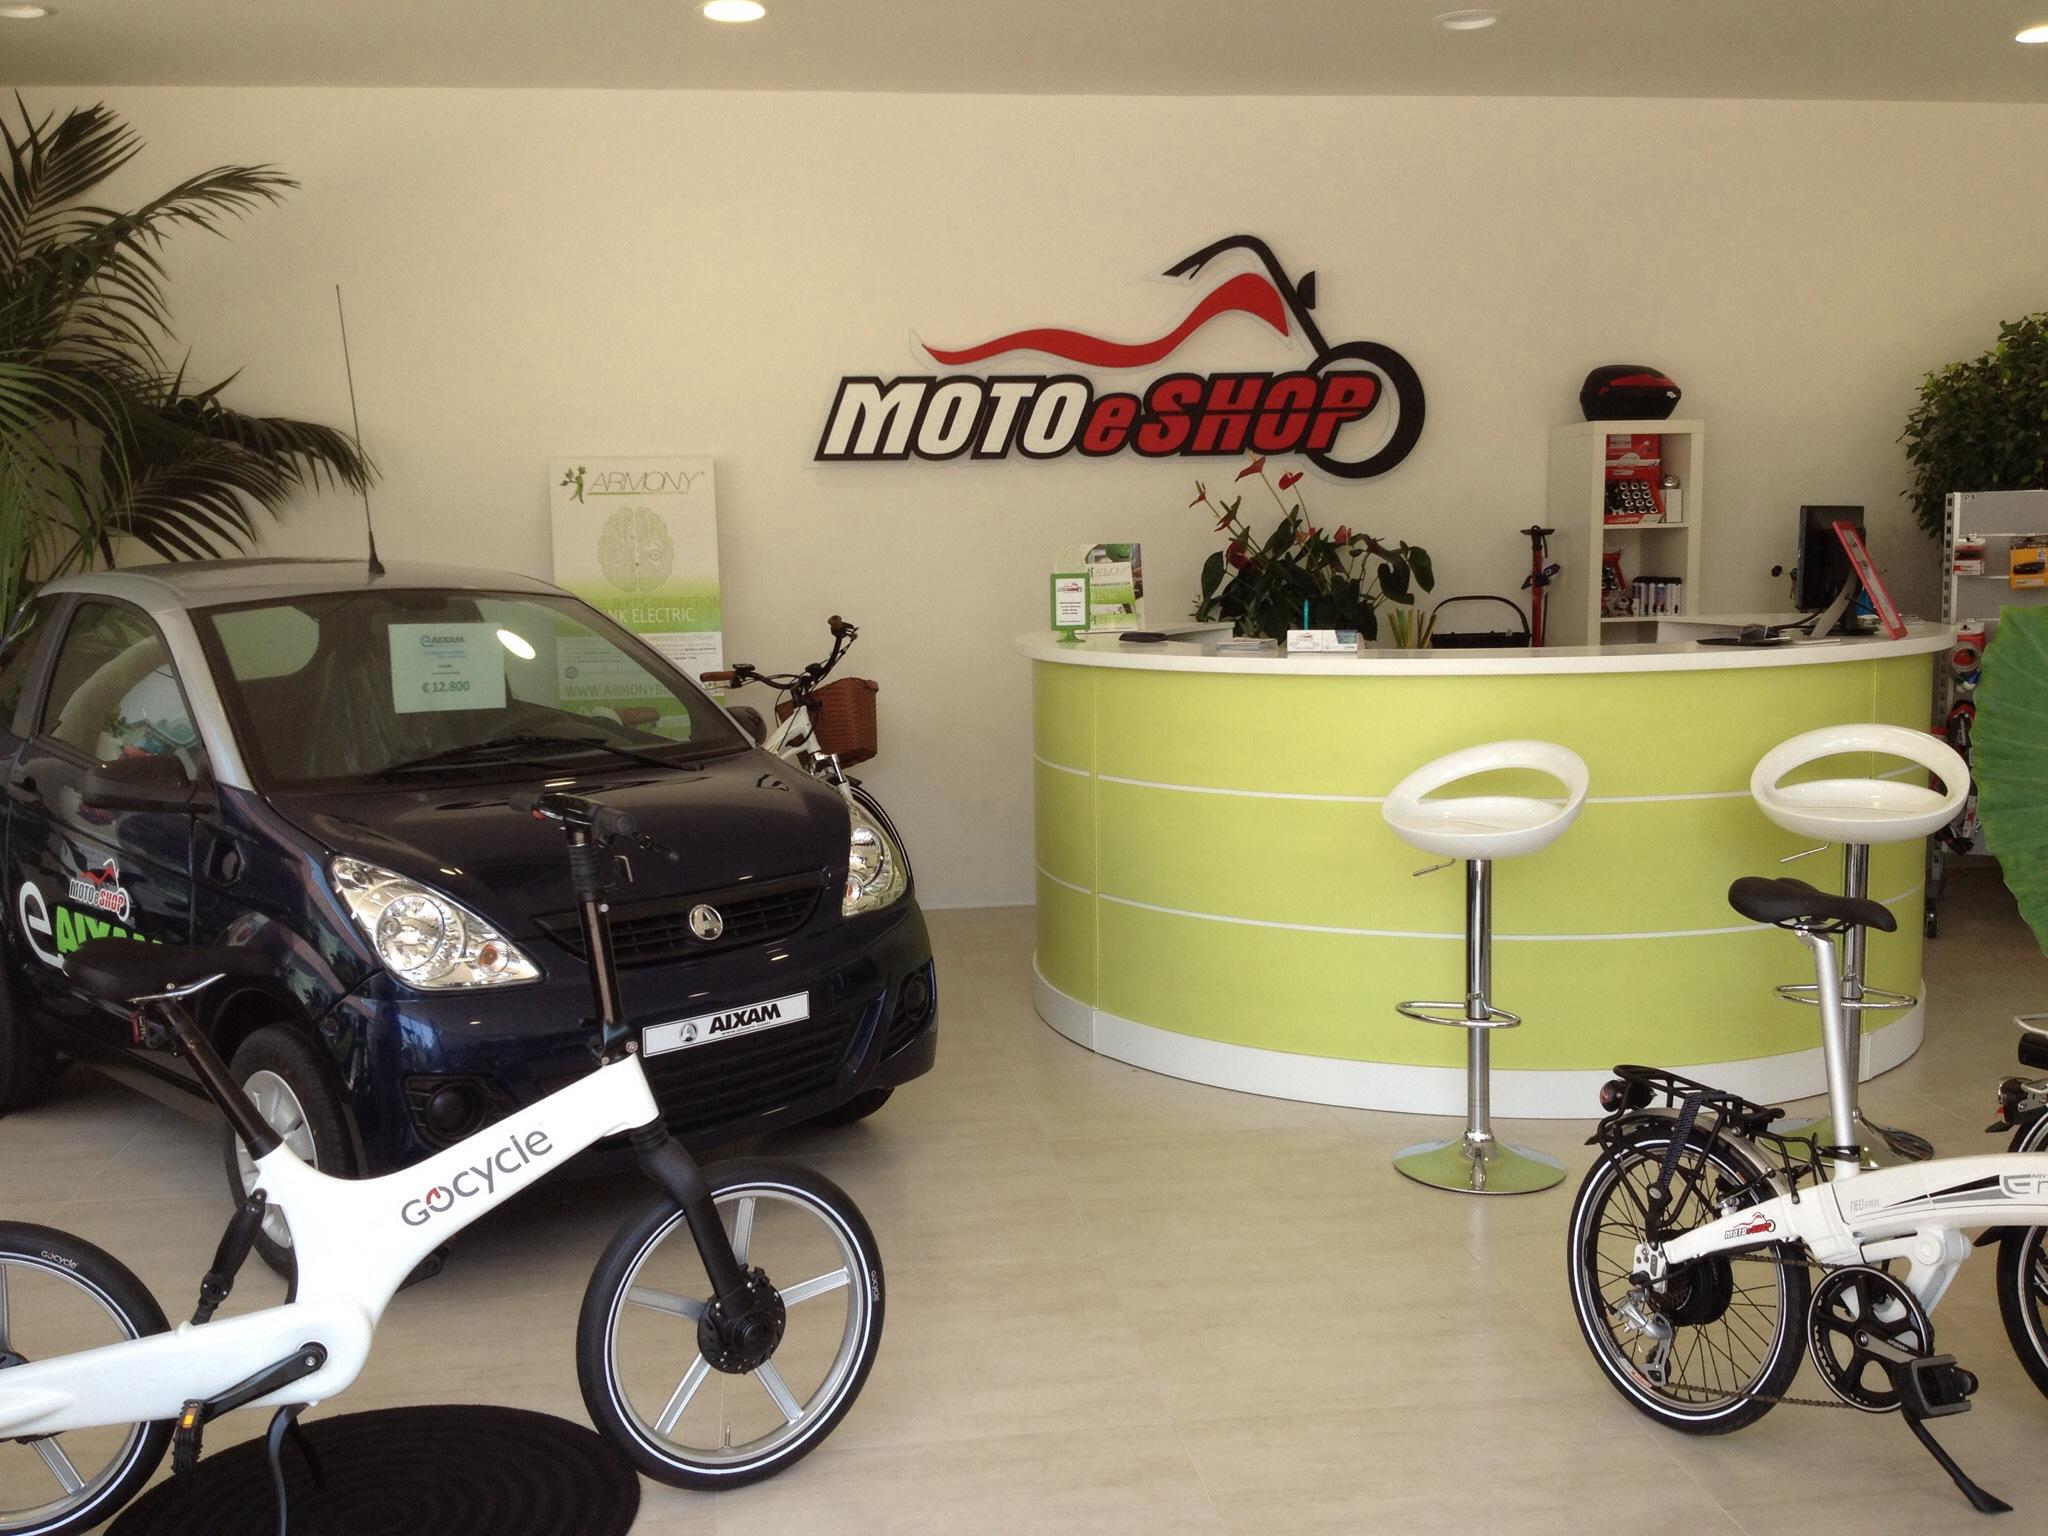 Moto e-shop,  Catania-Eike